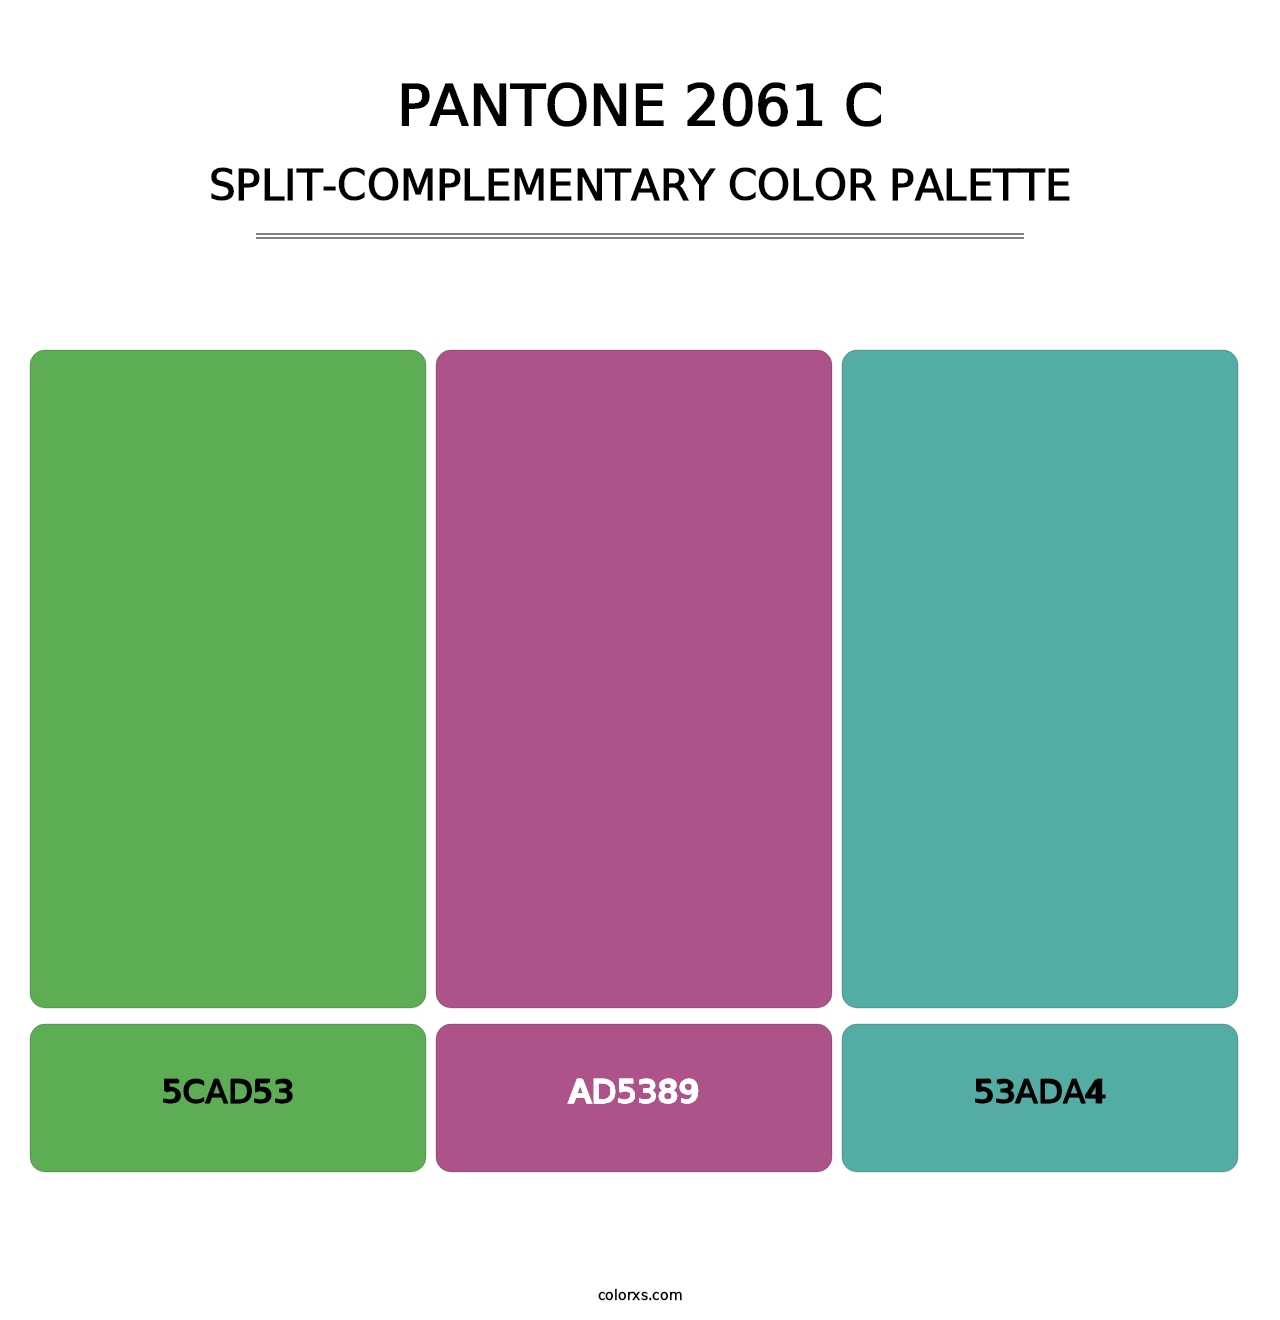 PANTONE 2061 C - Split-Complementary Color Palette